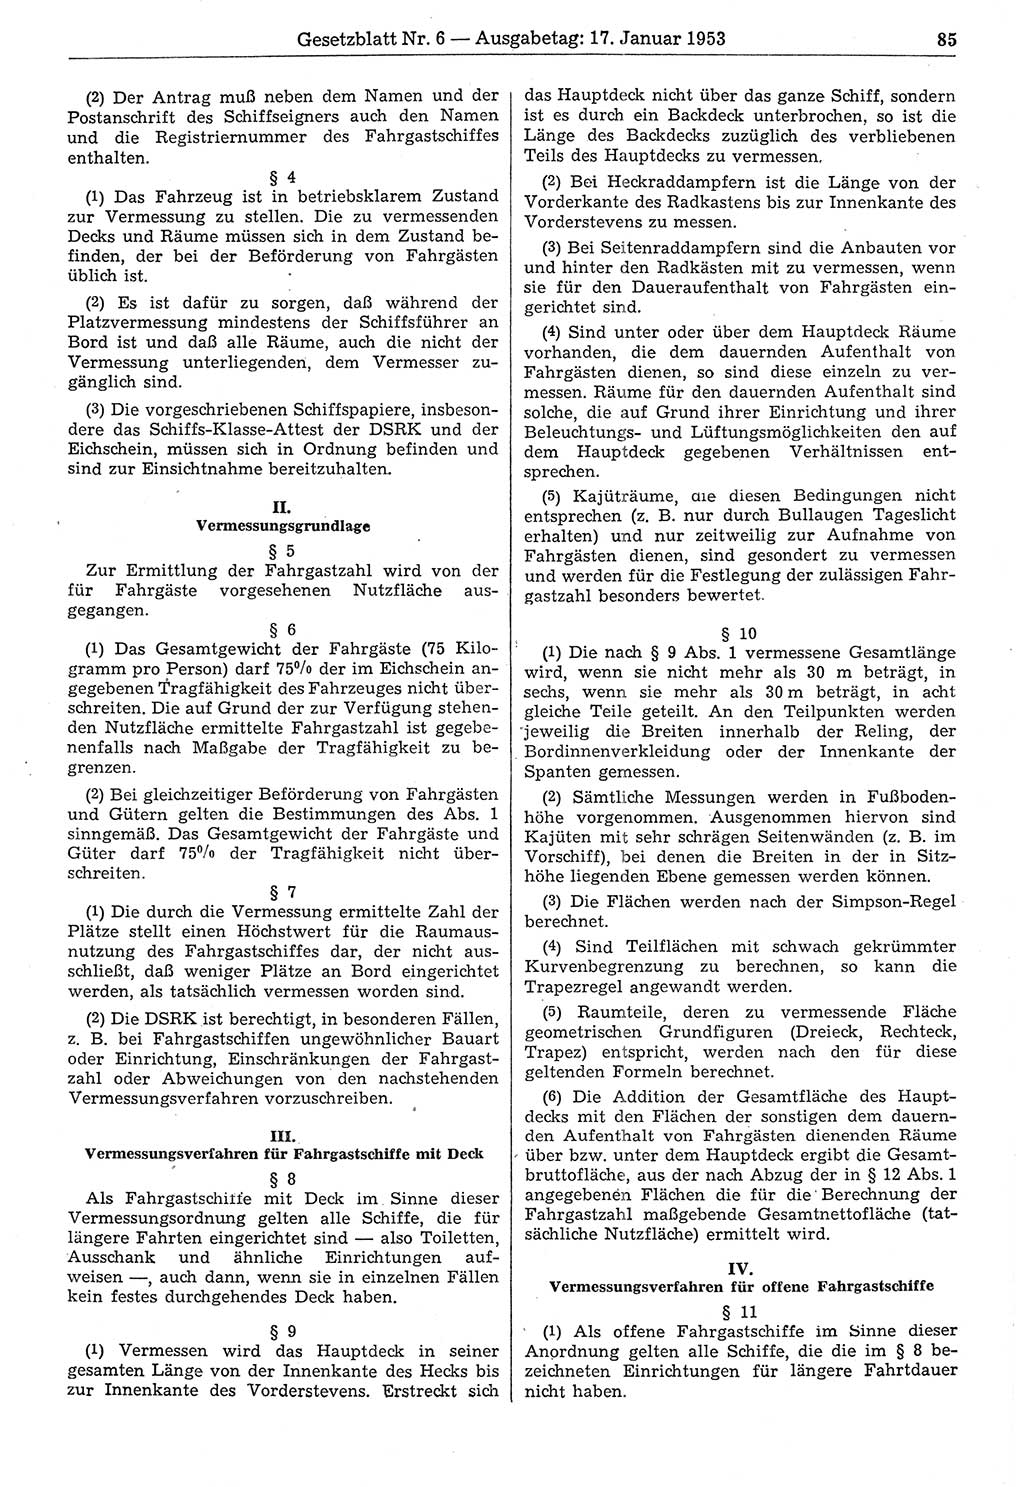 Gesetzblatt (GBl.) der Deutschen Demokratischen Republik (DDR) 1953, Seite 85 (GBl. DDR 1953, S. 85)